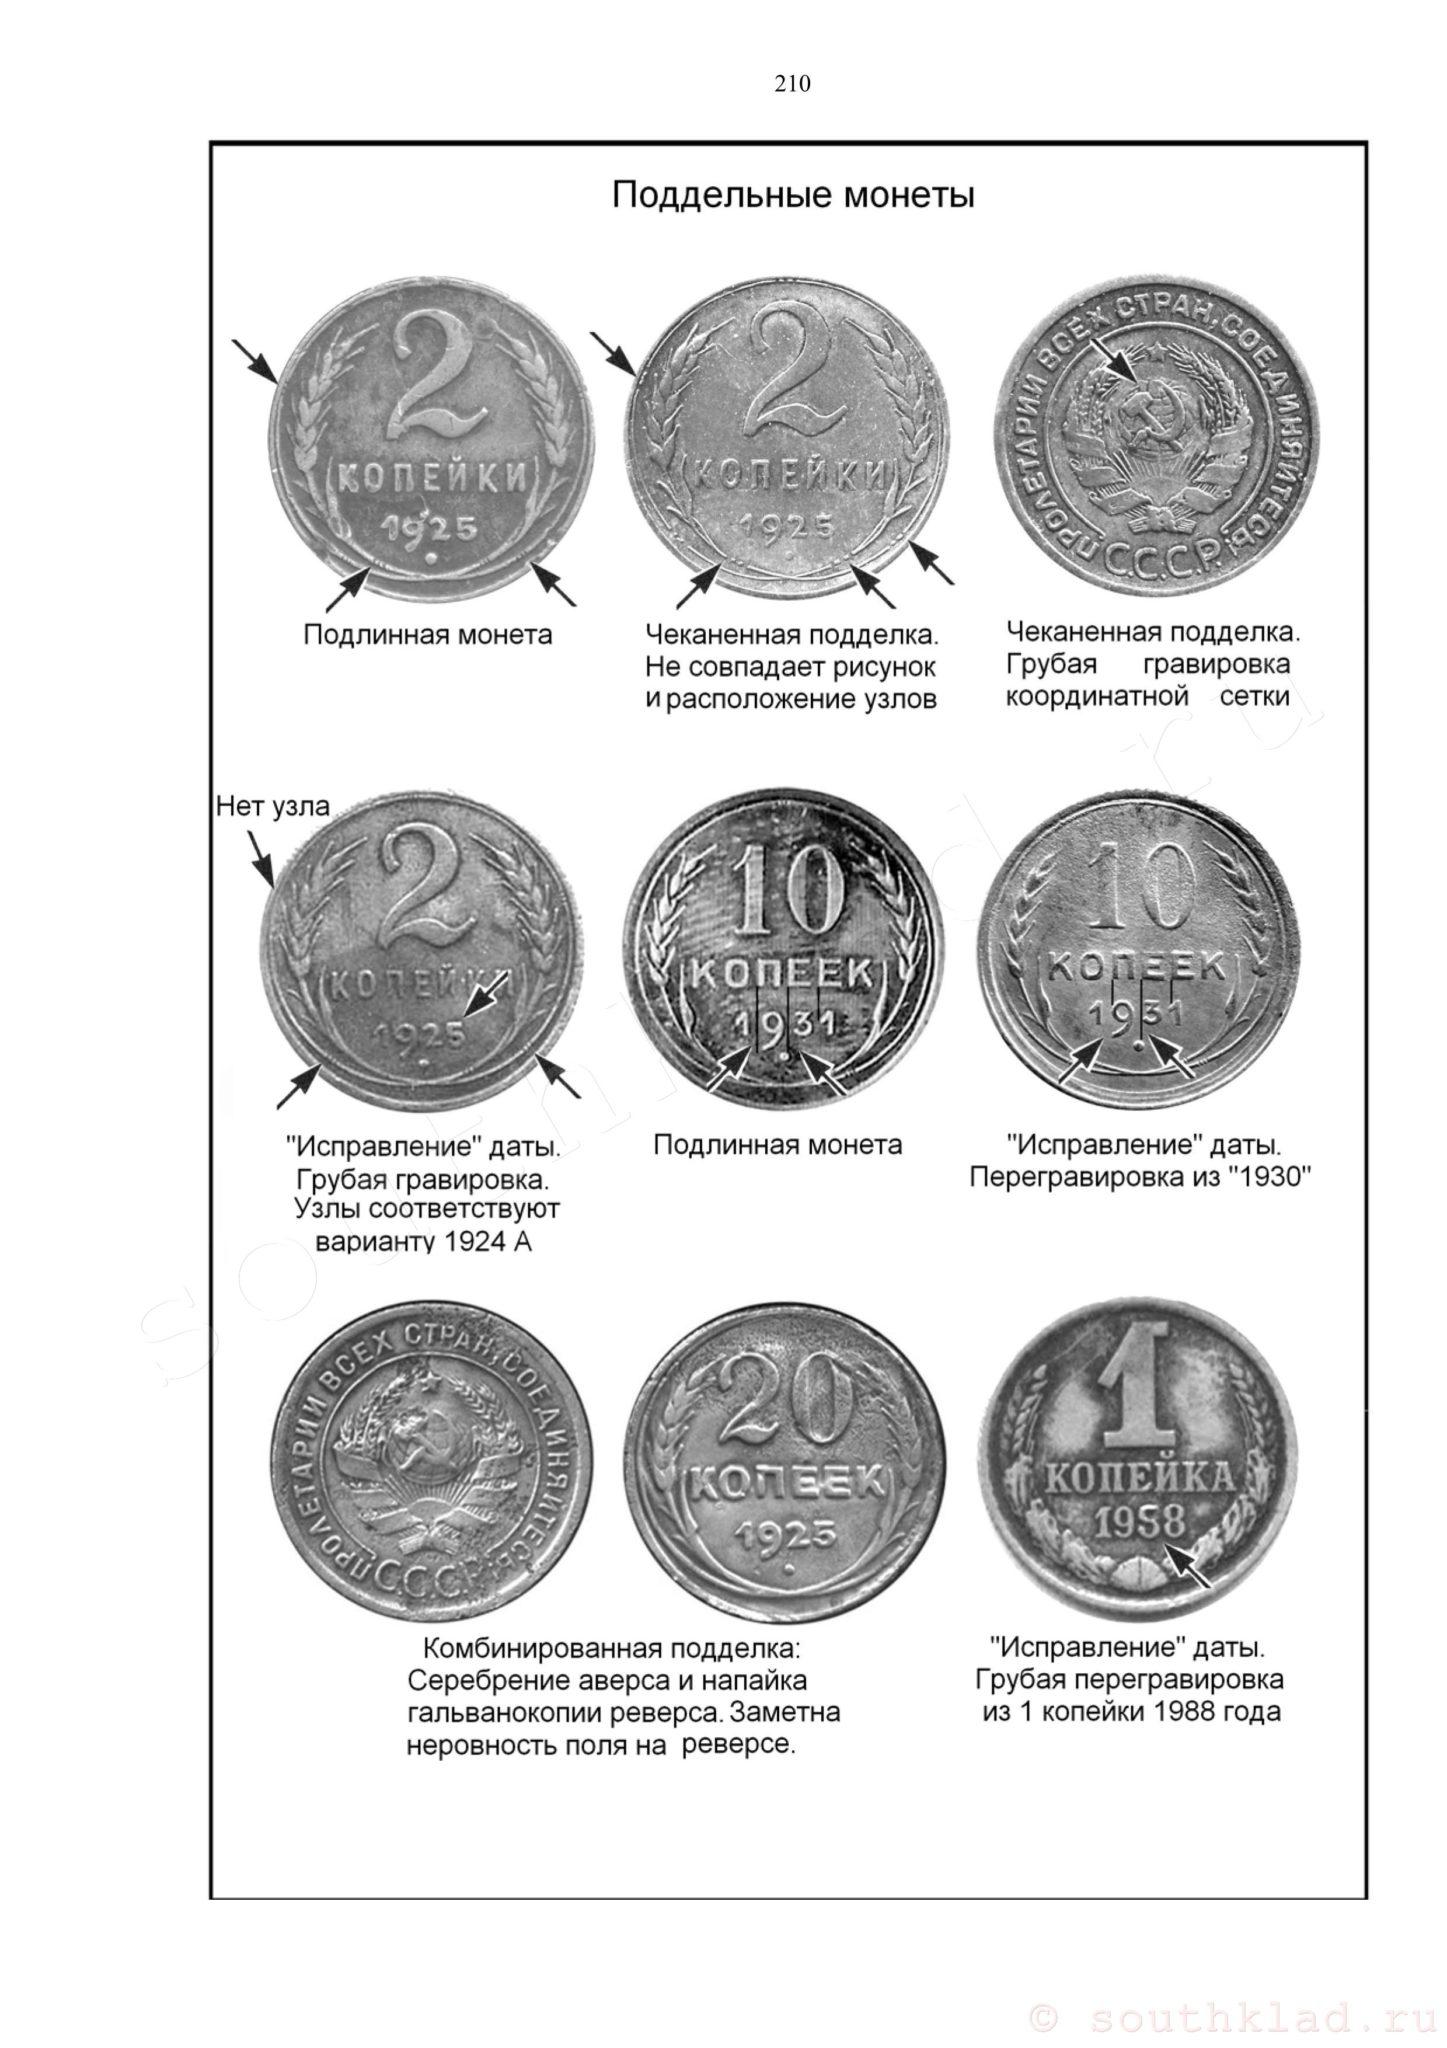 Как отличить подлинность монеты